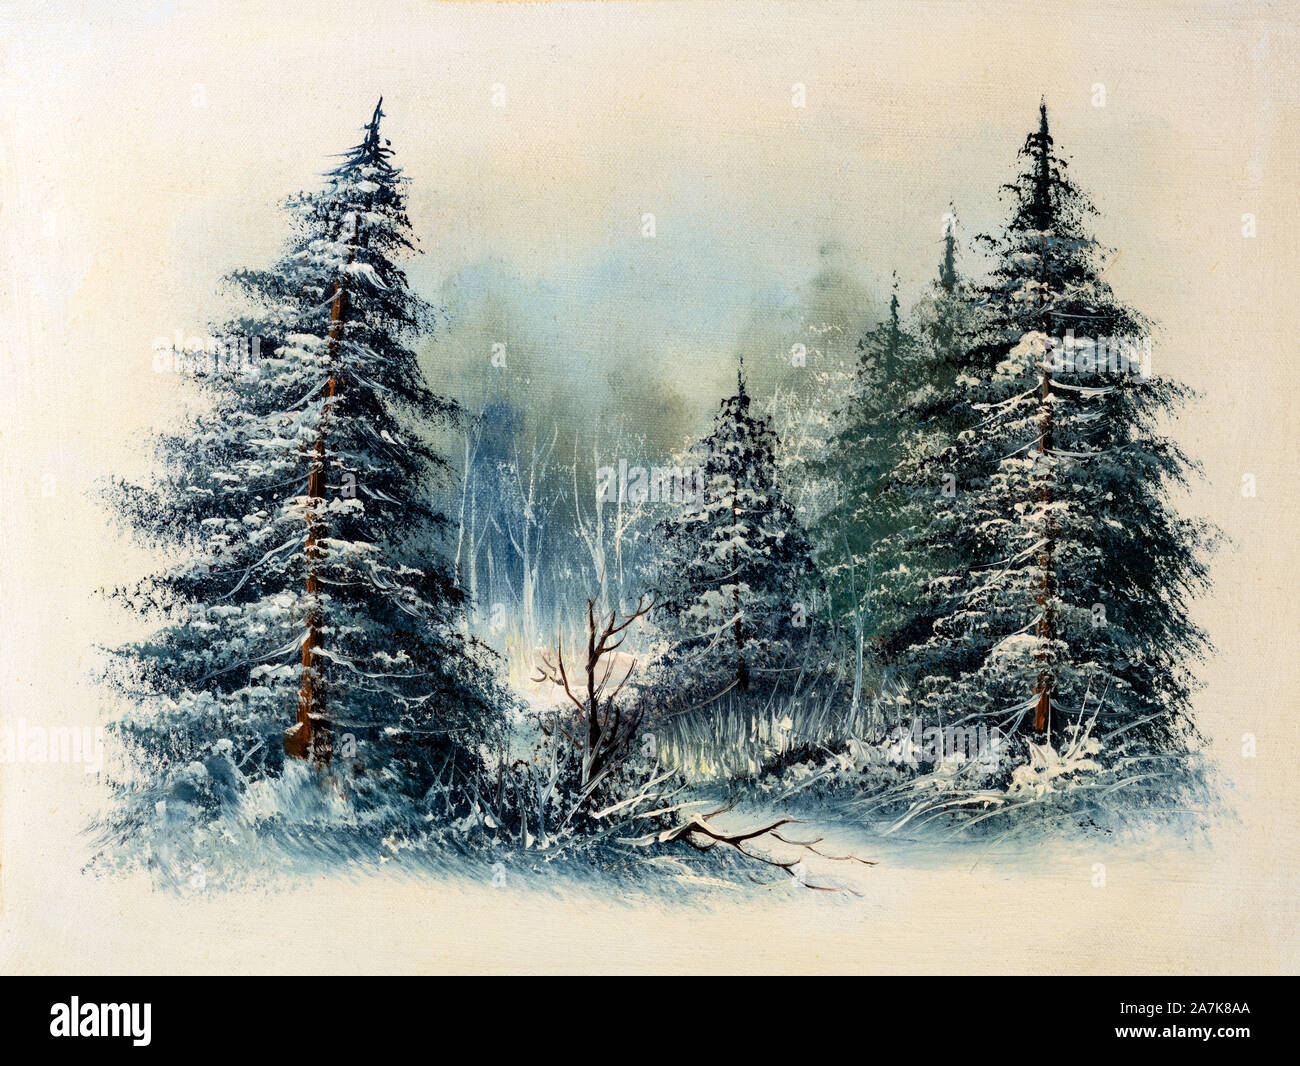 Evergreen neige-couvertes de pins dans une forêt, scène d'hiver peinture à l'huile. Concept de Noël. Banque D'Images